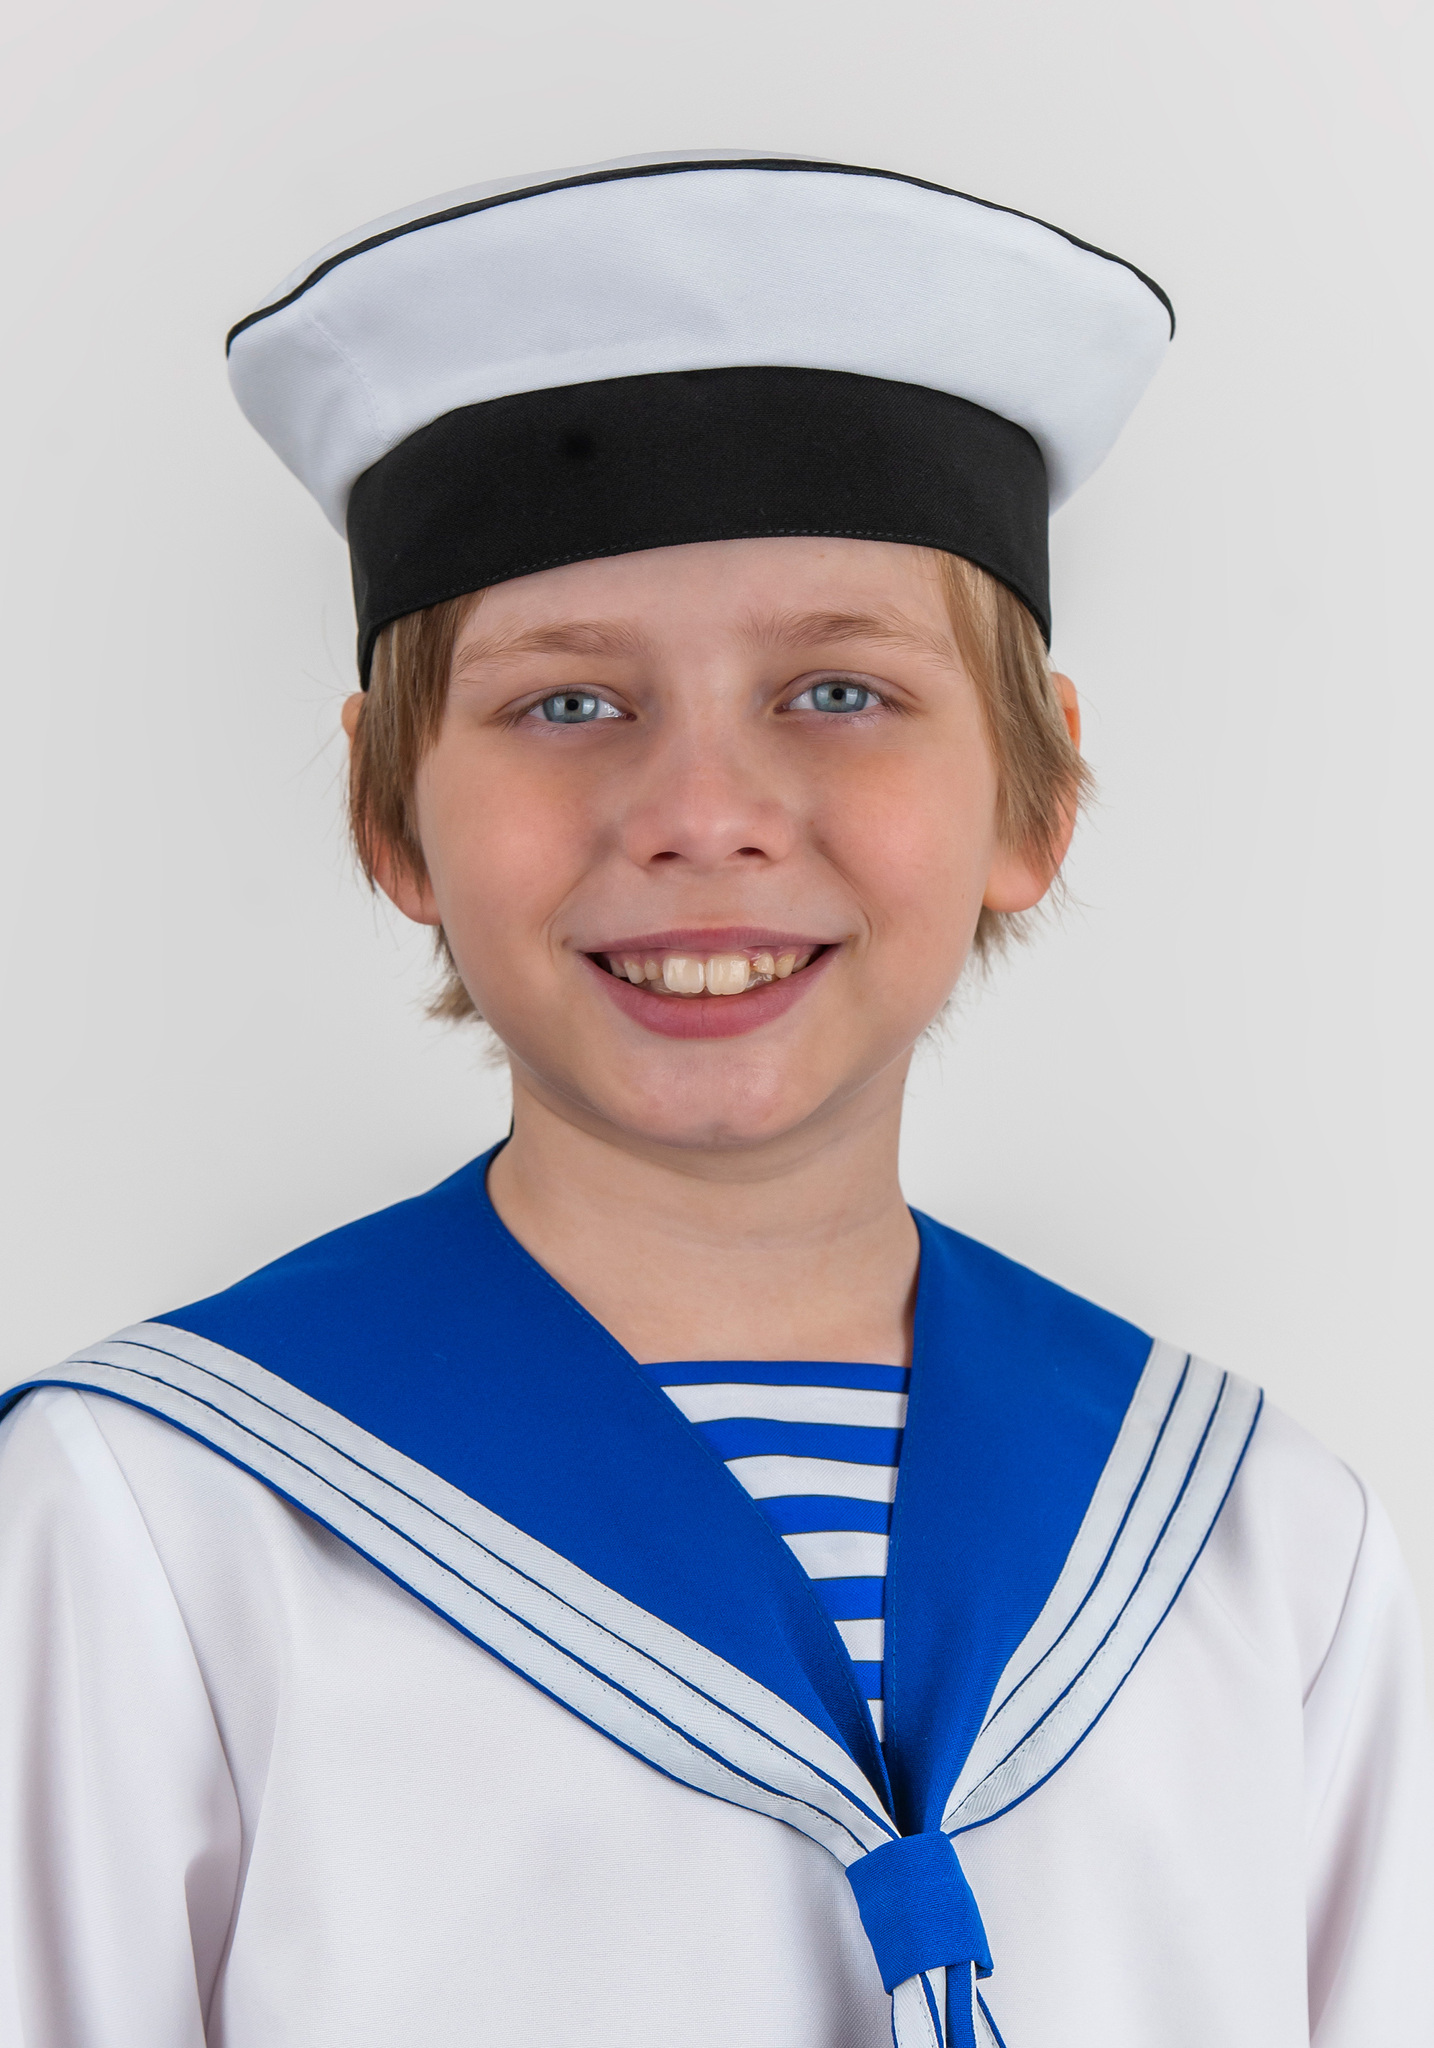 Костюм моряка для мальчика своими руками: пошаговая инструкция